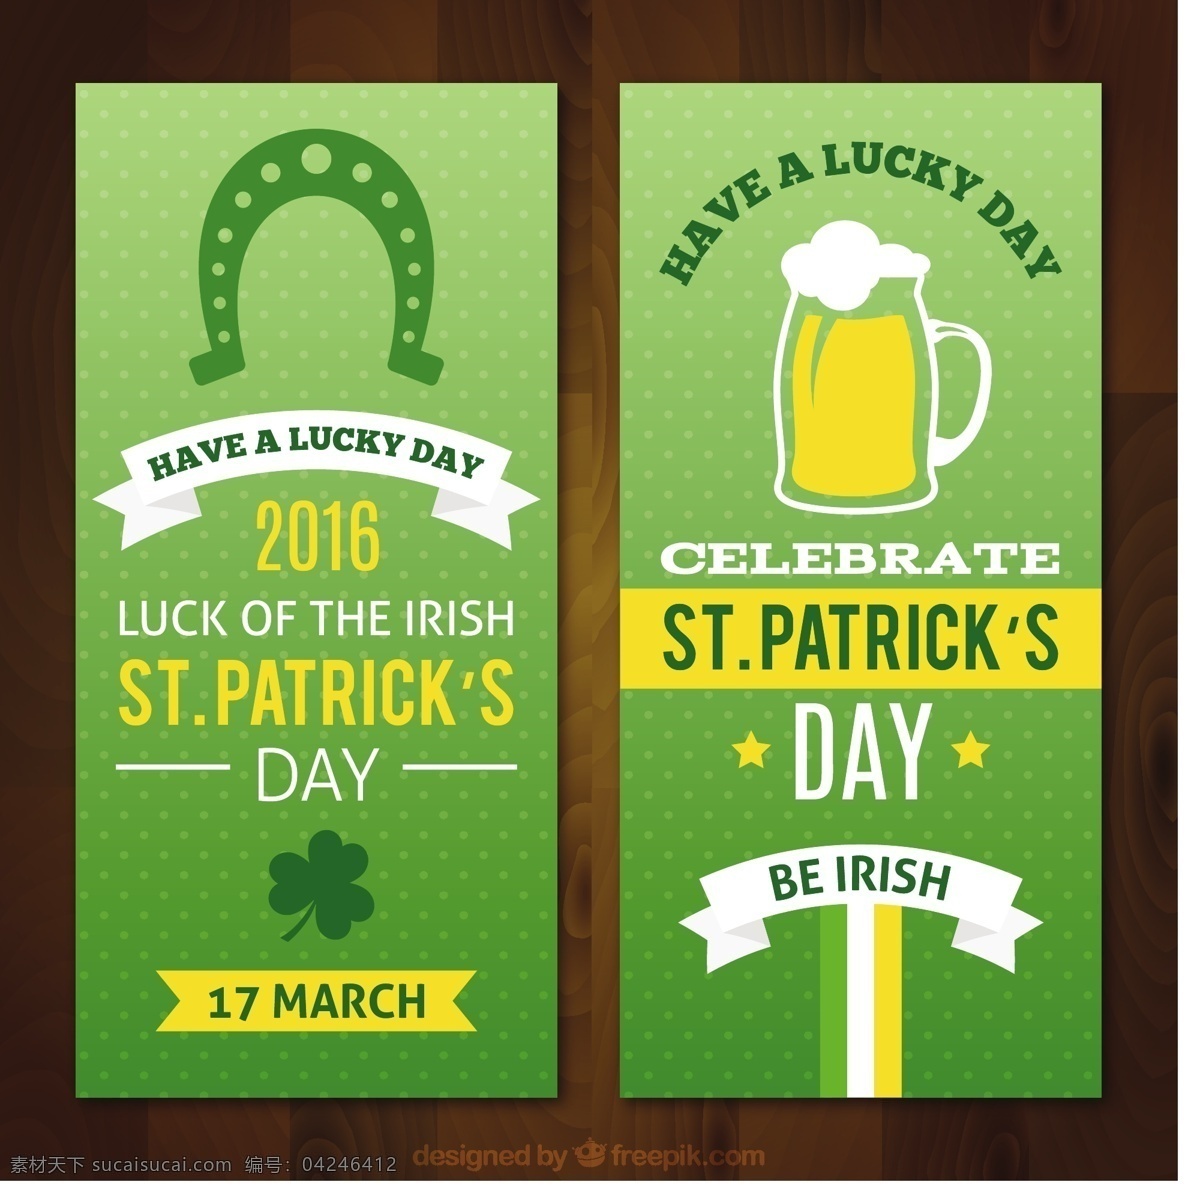 帕特里克 天 绿色 横幅 集 旗帜 图案 聚会 啤酒 春天 庆祝节日 三叶草 文化 马蹄 凯尔特人 爱尔兰人 传统 月 日 幸运 圣帕特里克